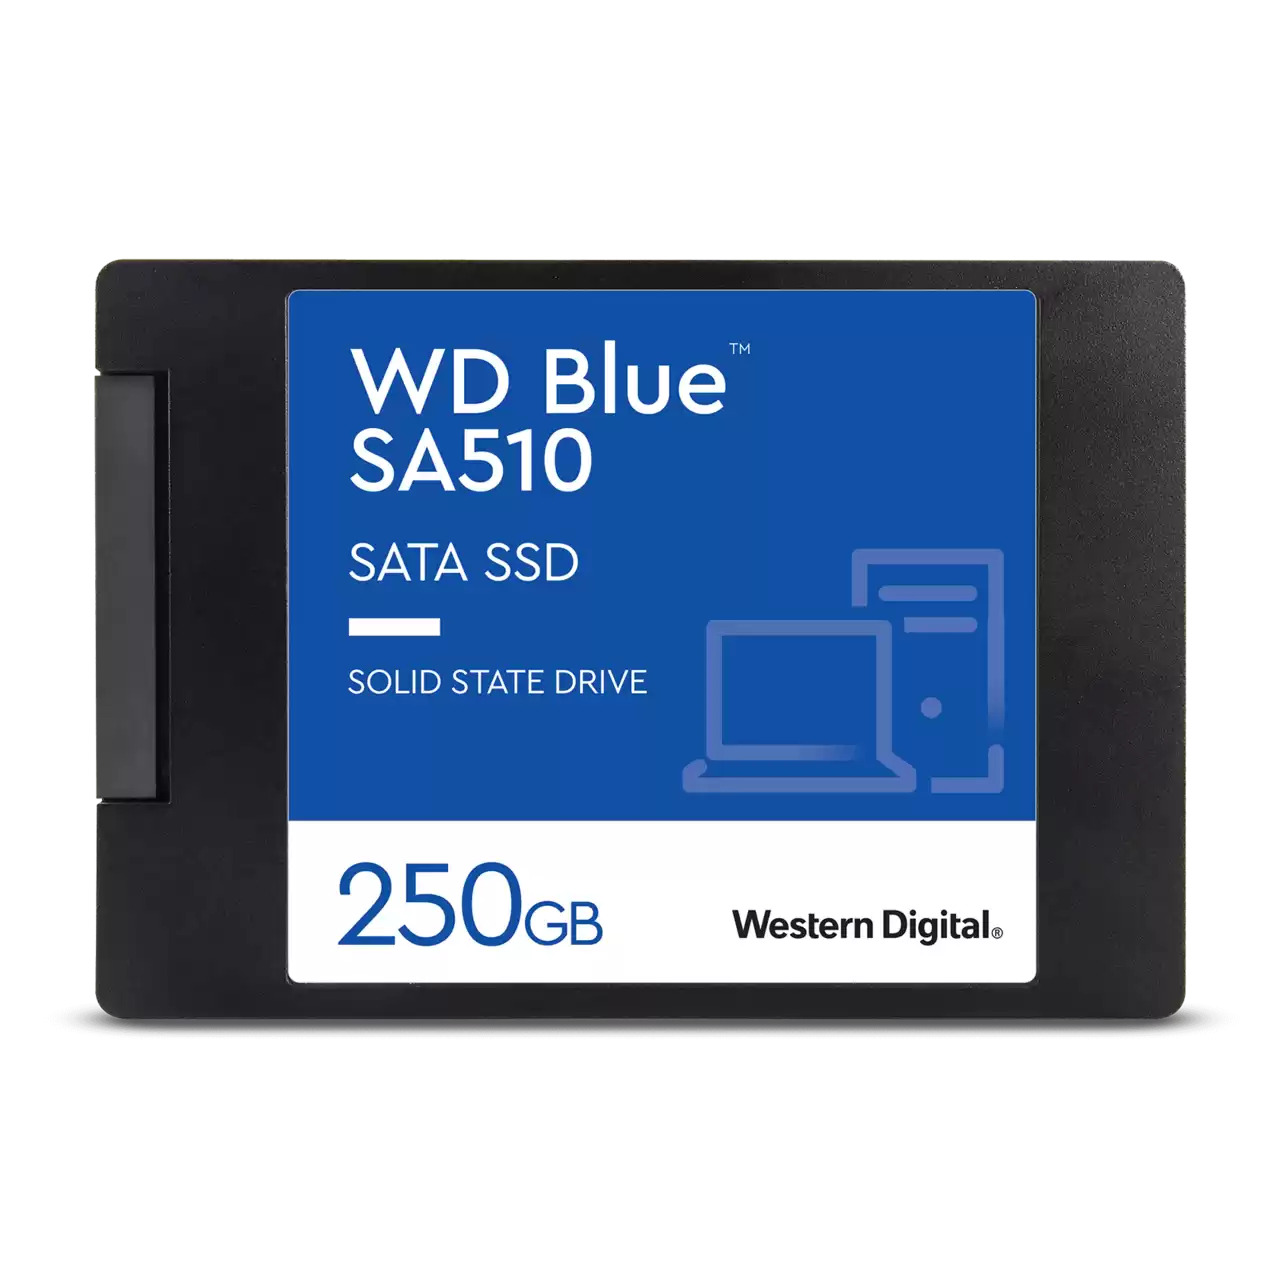 Hard disk ssd western digital wd blue sa510 250gb 2.5